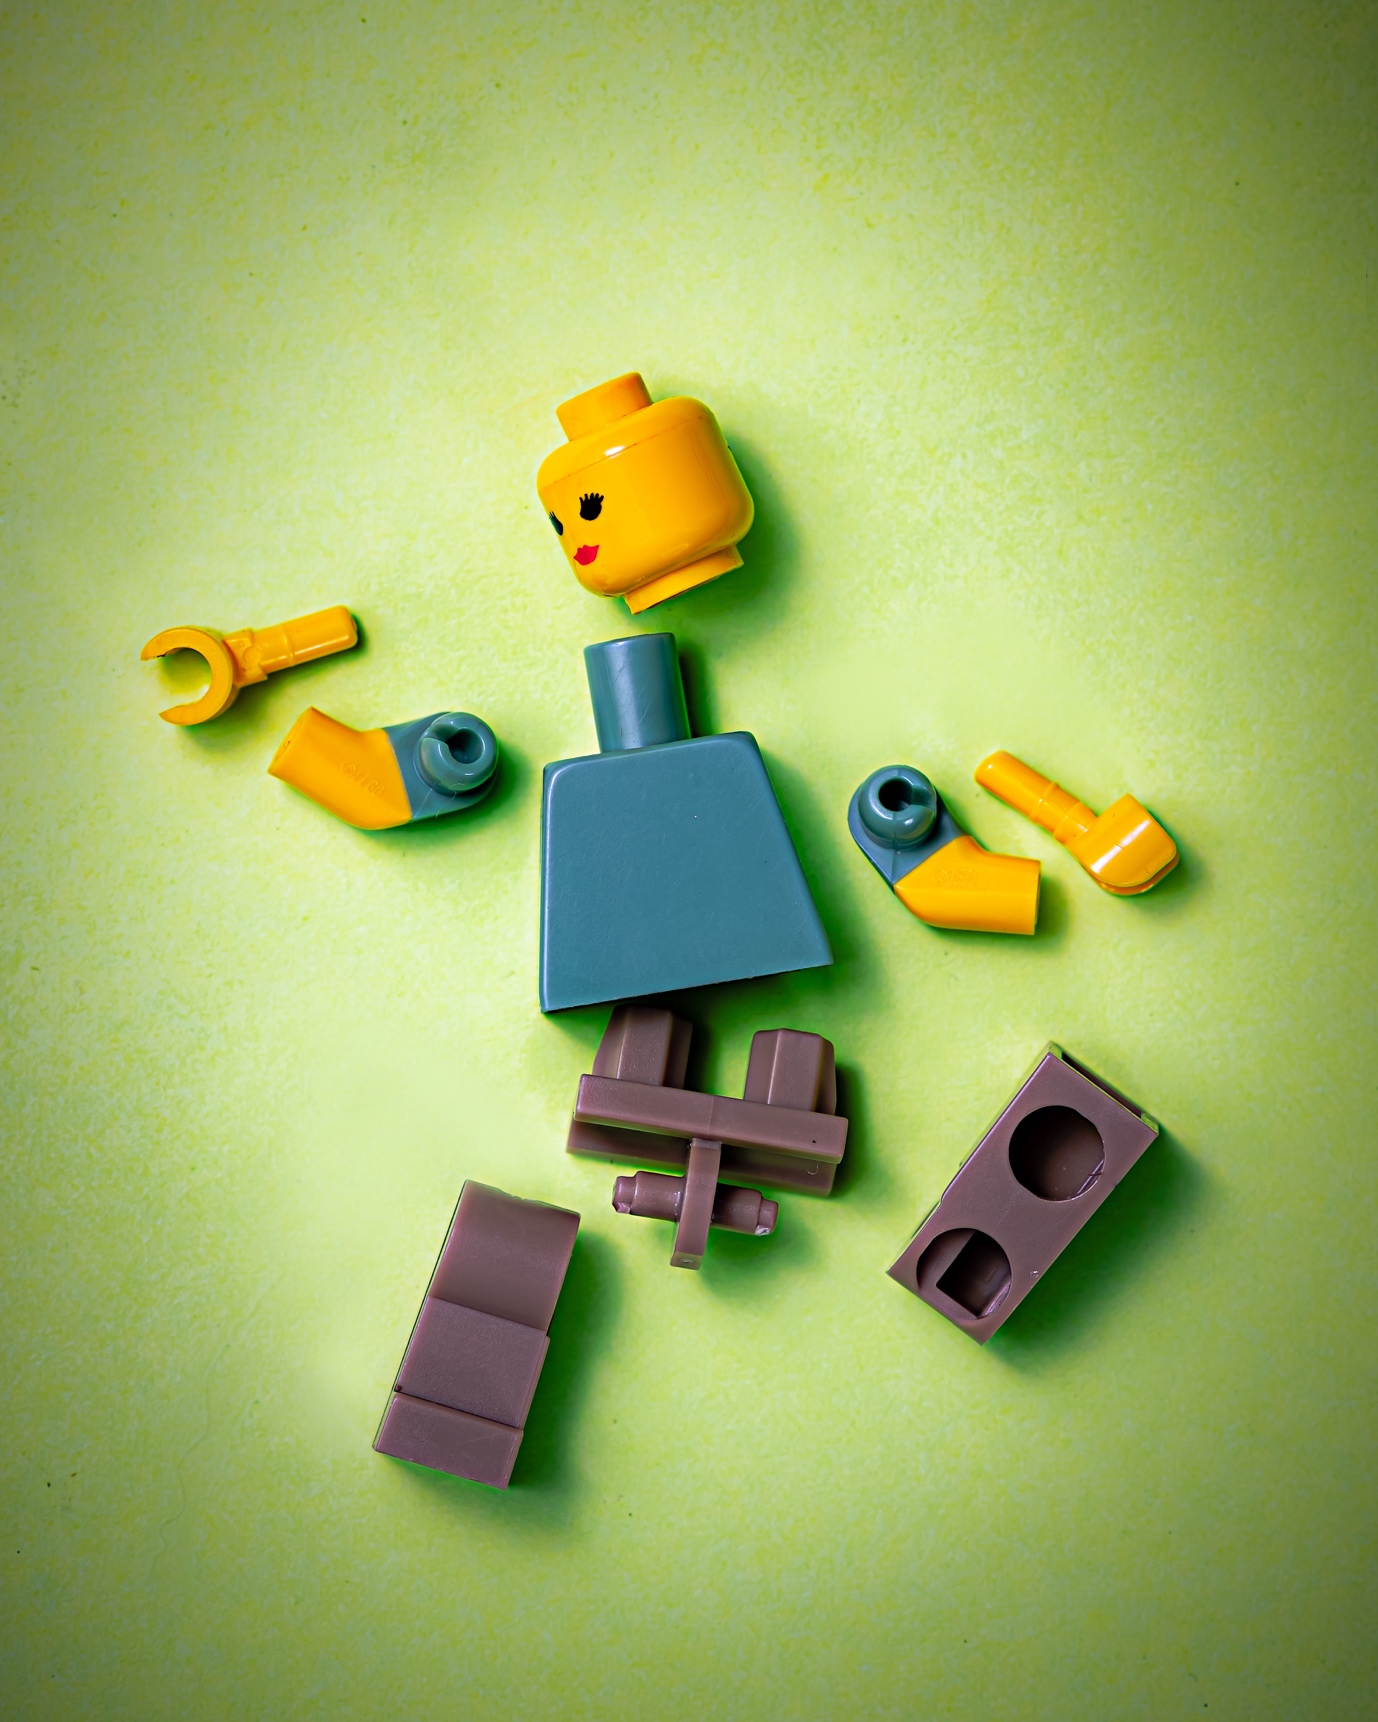 A broken Lego woman